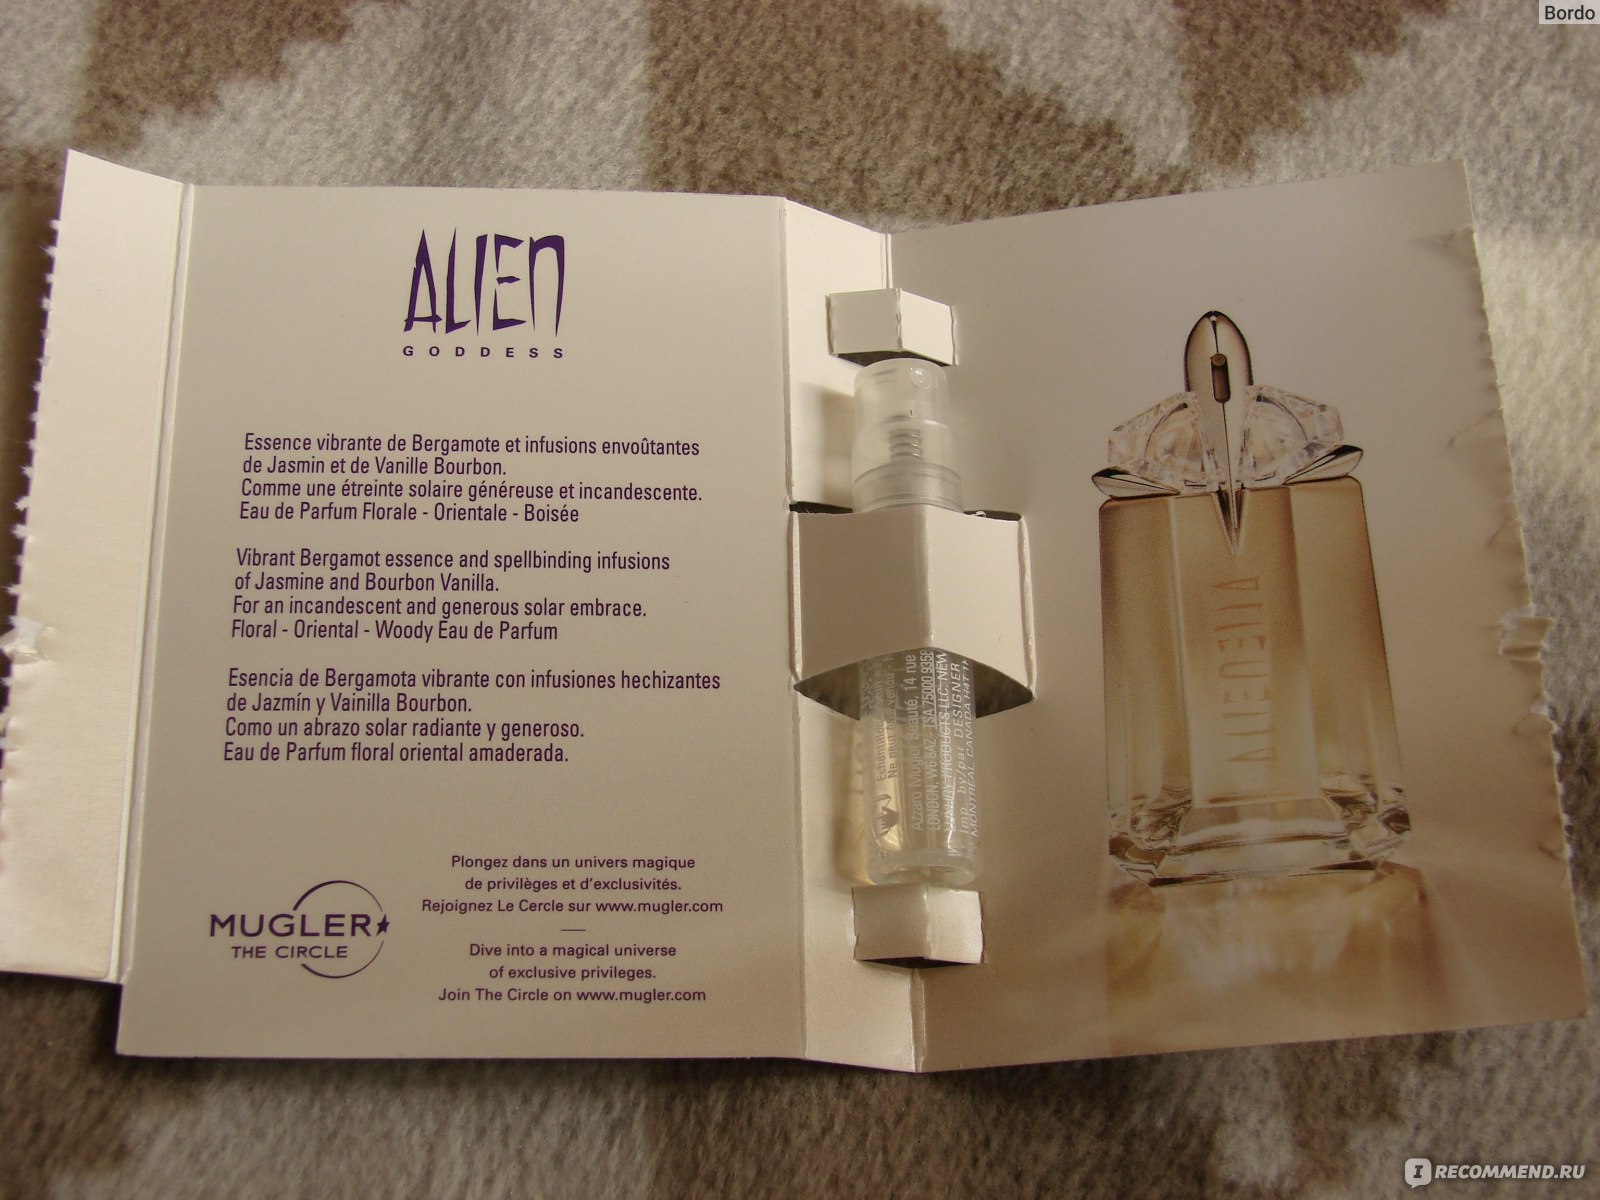 Парфюмерная вода Mugler Alien Goddess: открытка с пробником, вид изнутри, внешний вид флакона-полноразмерника